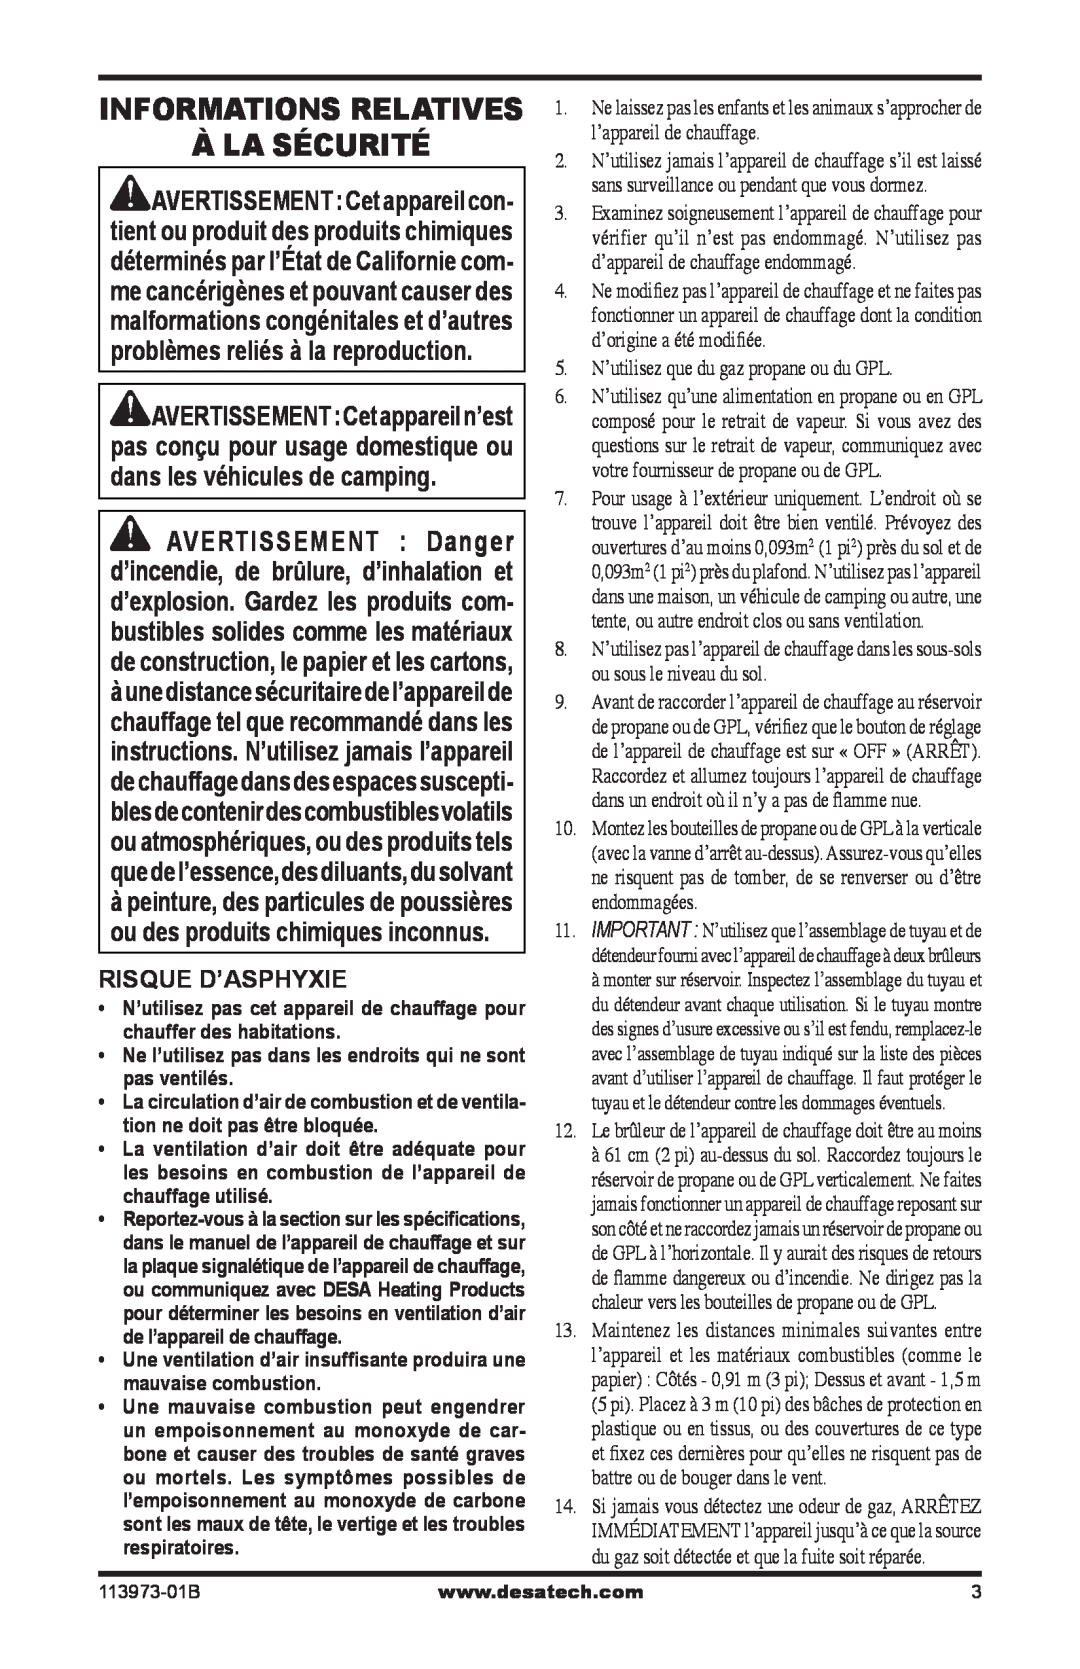 Desa AND TT30 10 owner manual À La Sécurité, Informations Relatives, Risque D’Asphyxie 